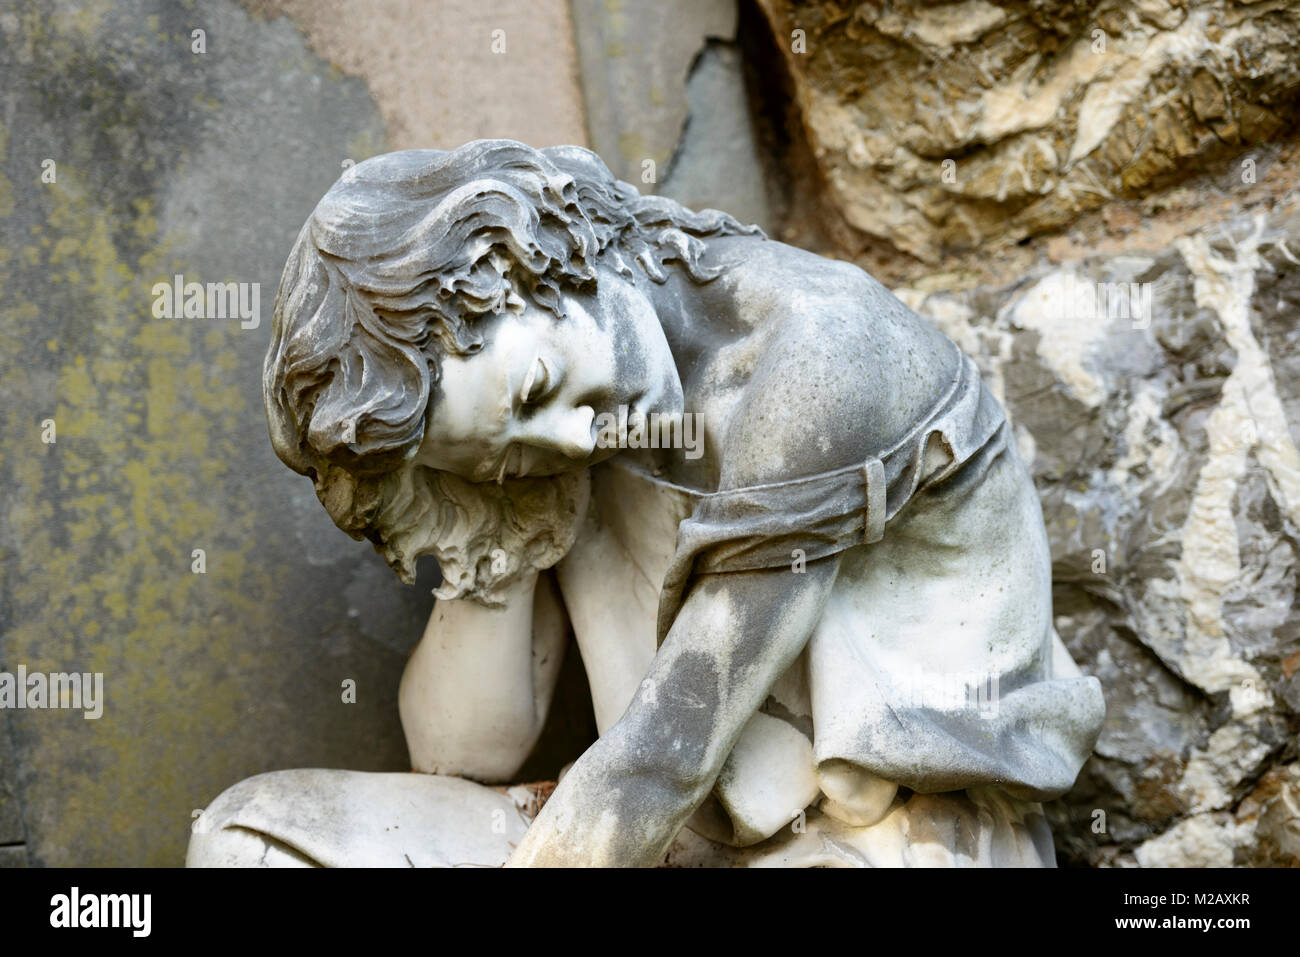 La escultura de piedra de la mujer que sufre en el cementerio monumental de Staglieno histórico en la ciudad, rodada en la brillante luz de invierno en Genova, Liguria, Italia Foto de stock